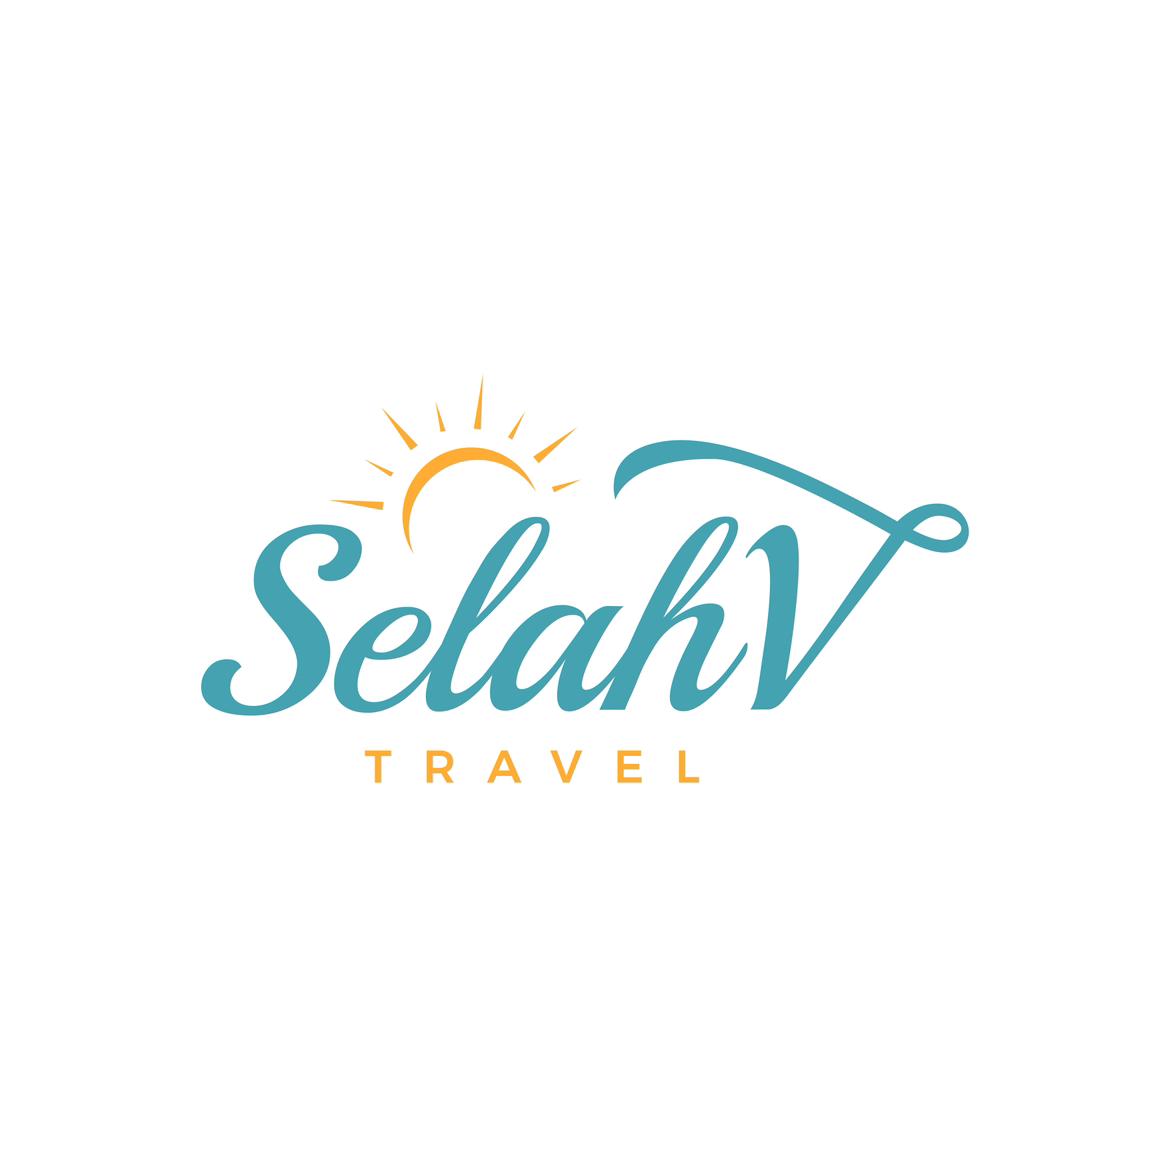 SelahV Travel 's images